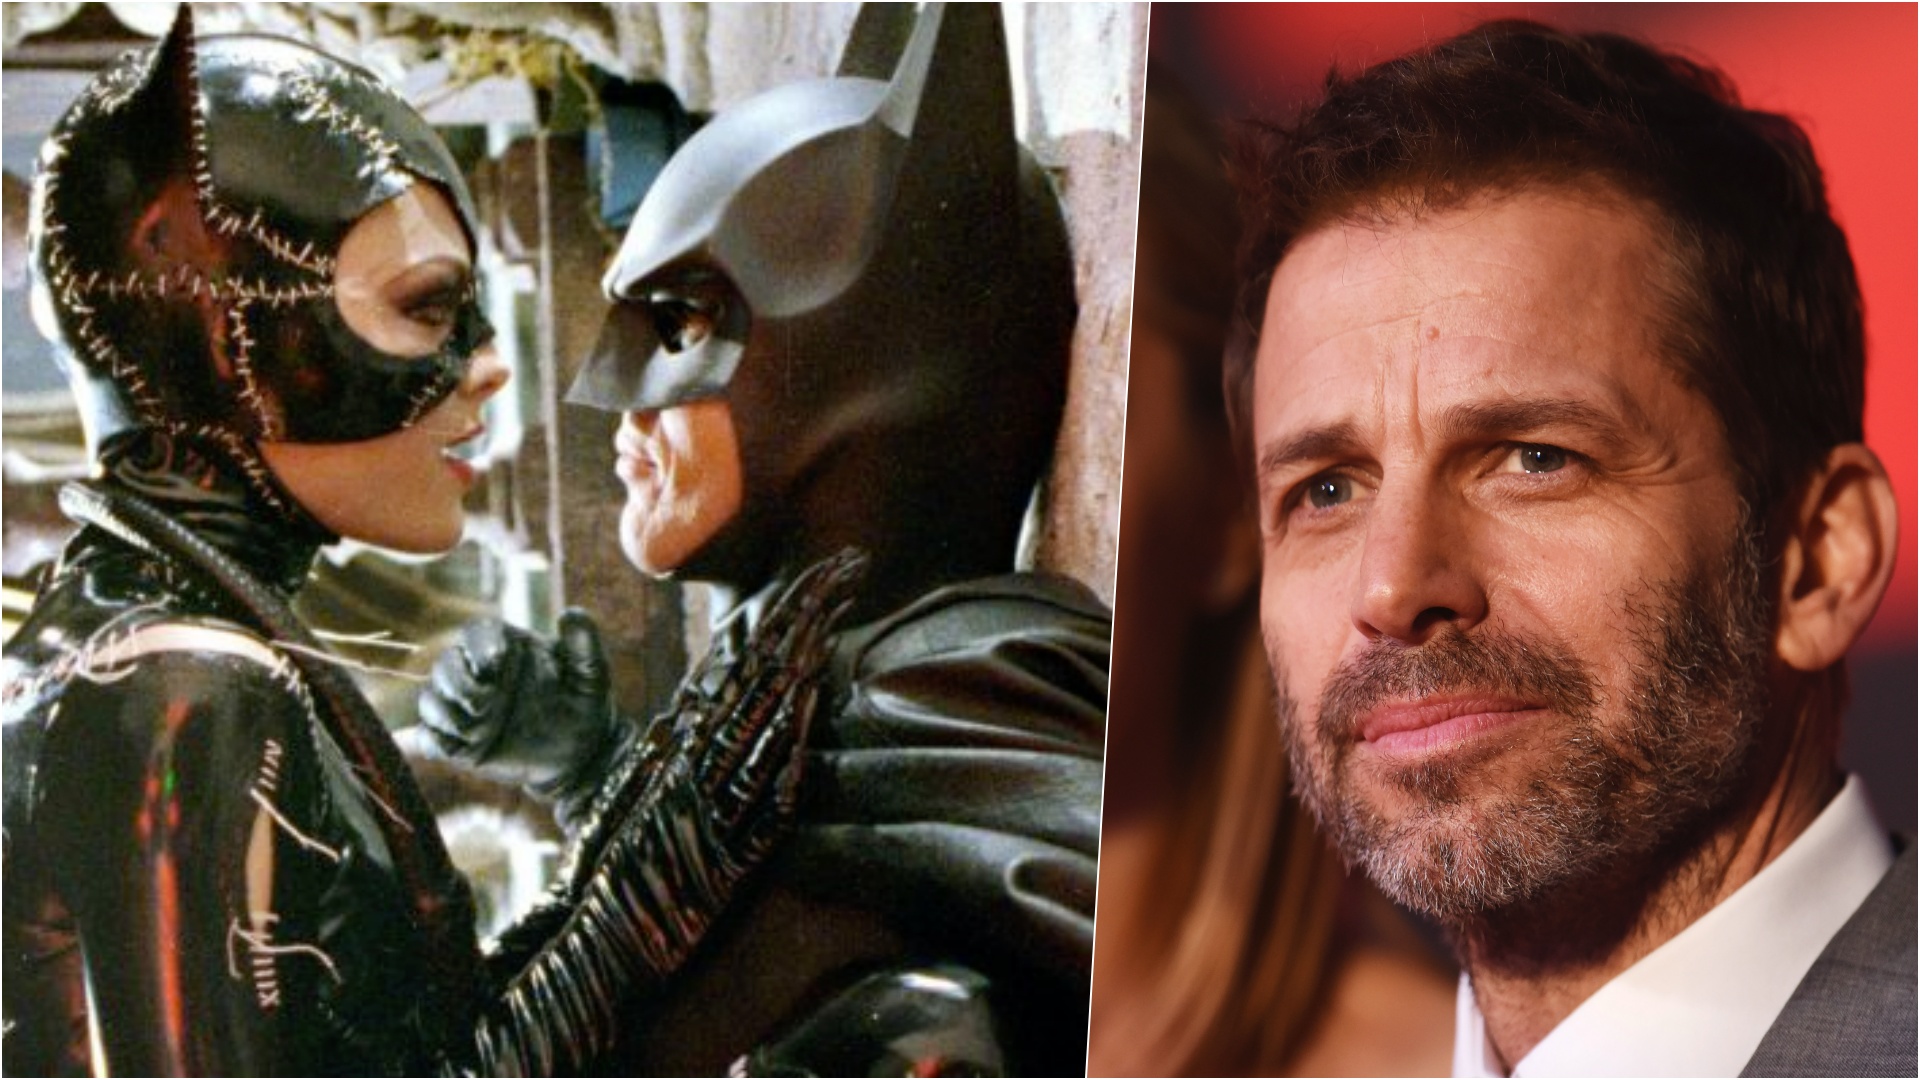 Batman E La Scena Di Sesso Orale Con Catwoman La Dc Interviene Contro Zack Snyder